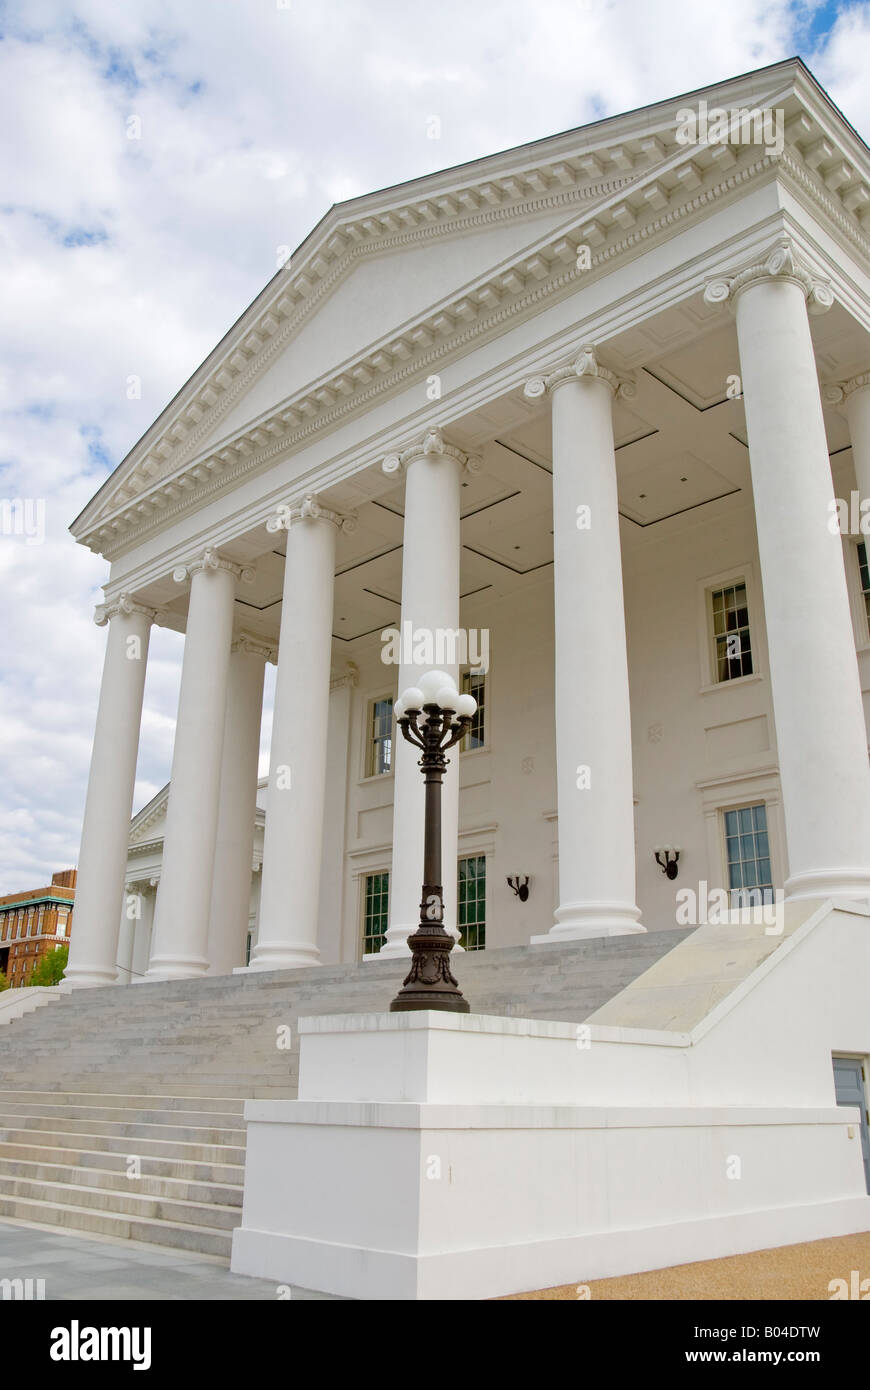 Die Virginia State Capitol building in Richmond, Virginia, den Sitz der Landesregierung Virginia. Stockfoto